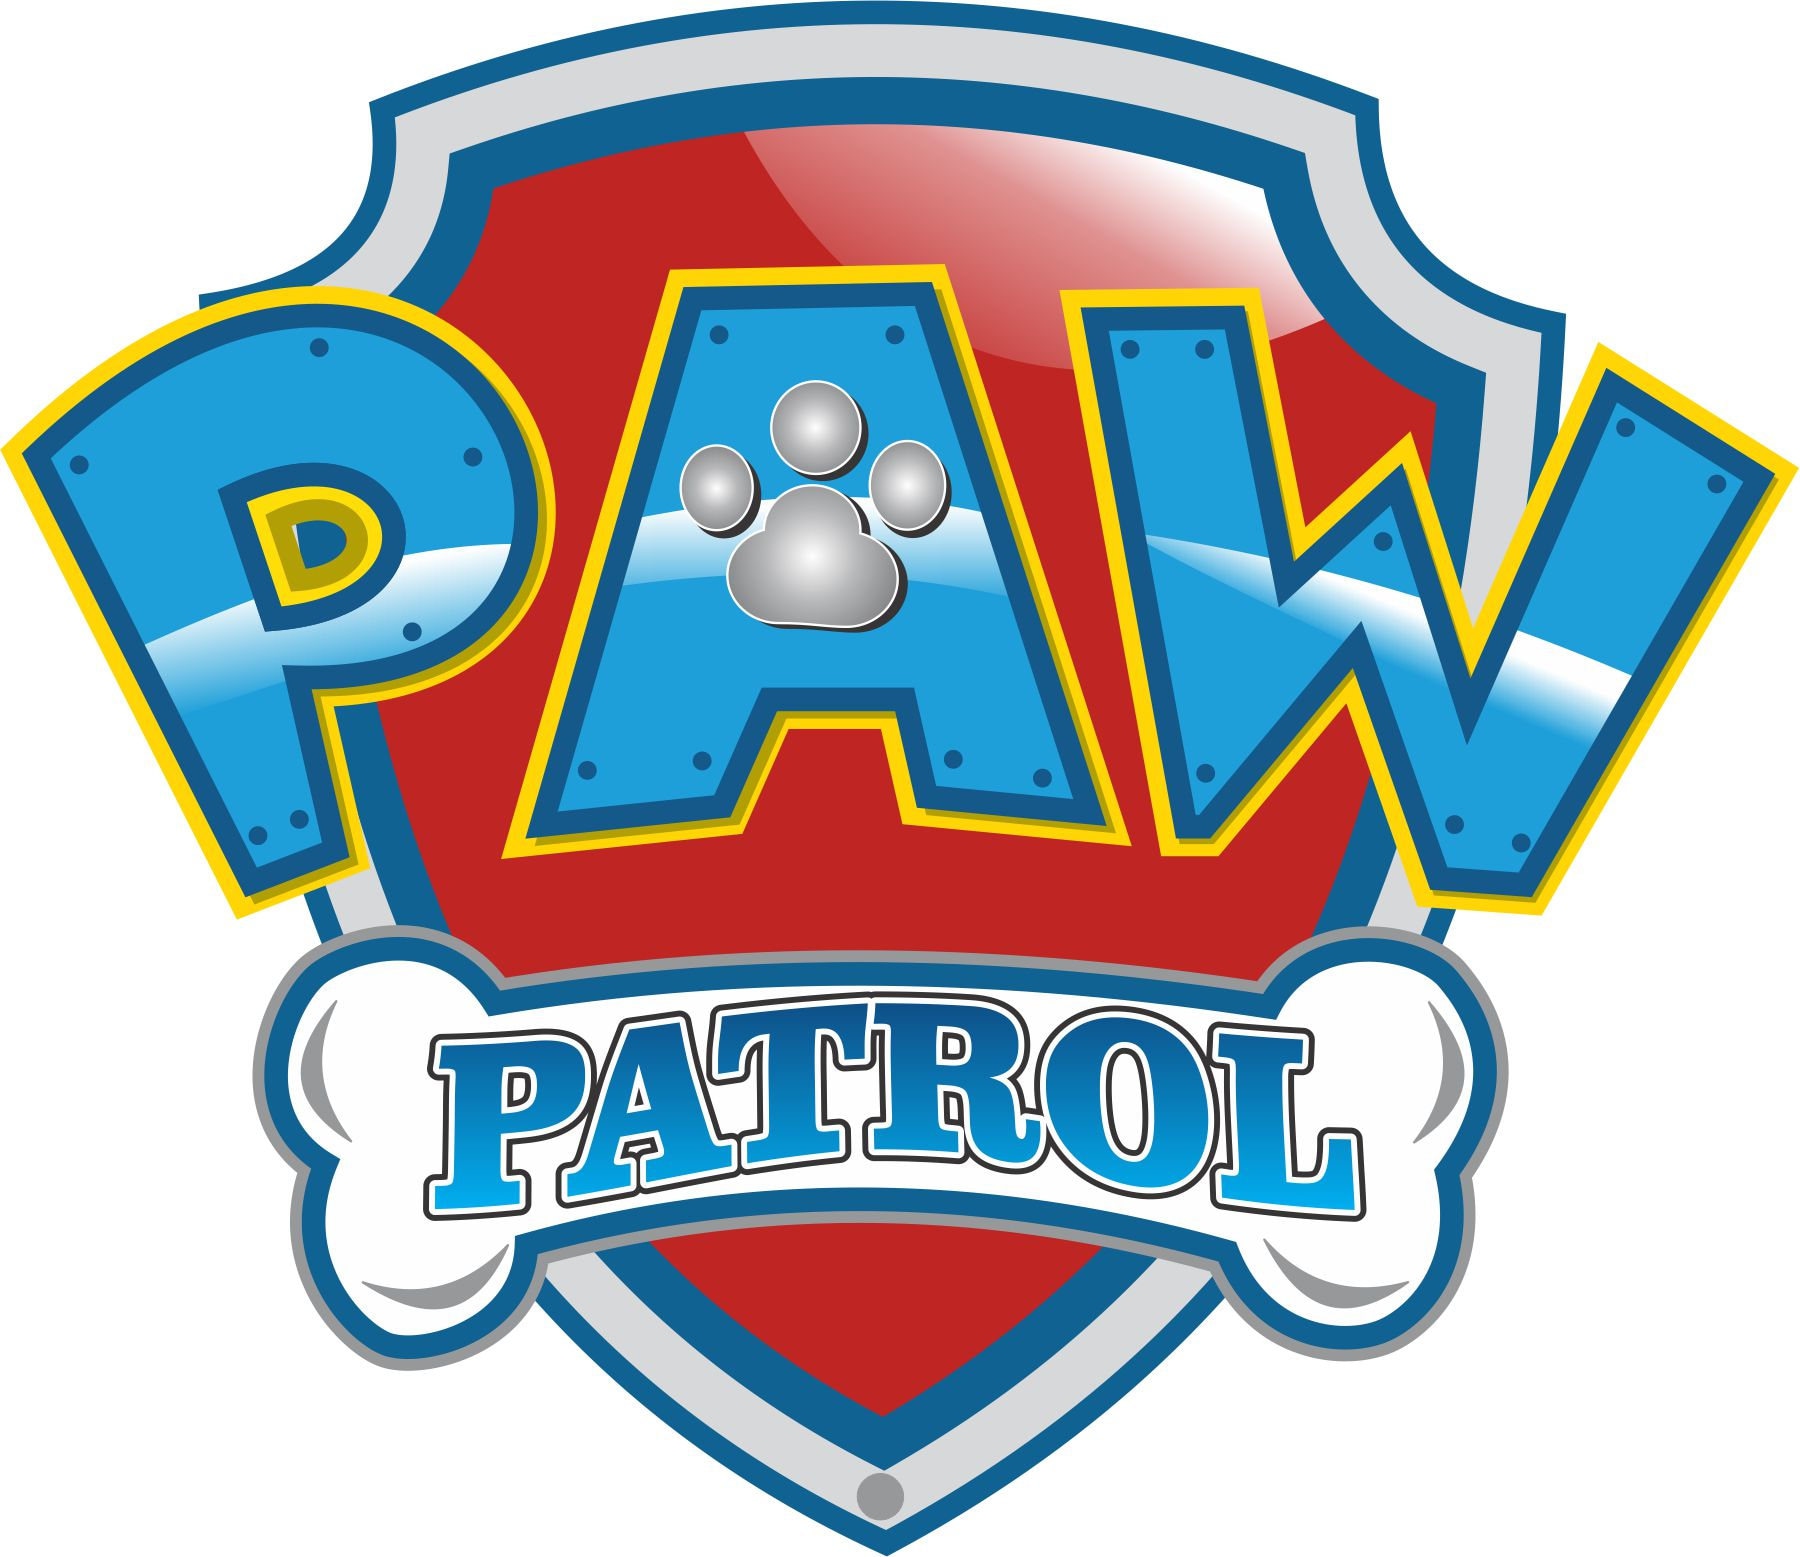 chase paw patrol logo